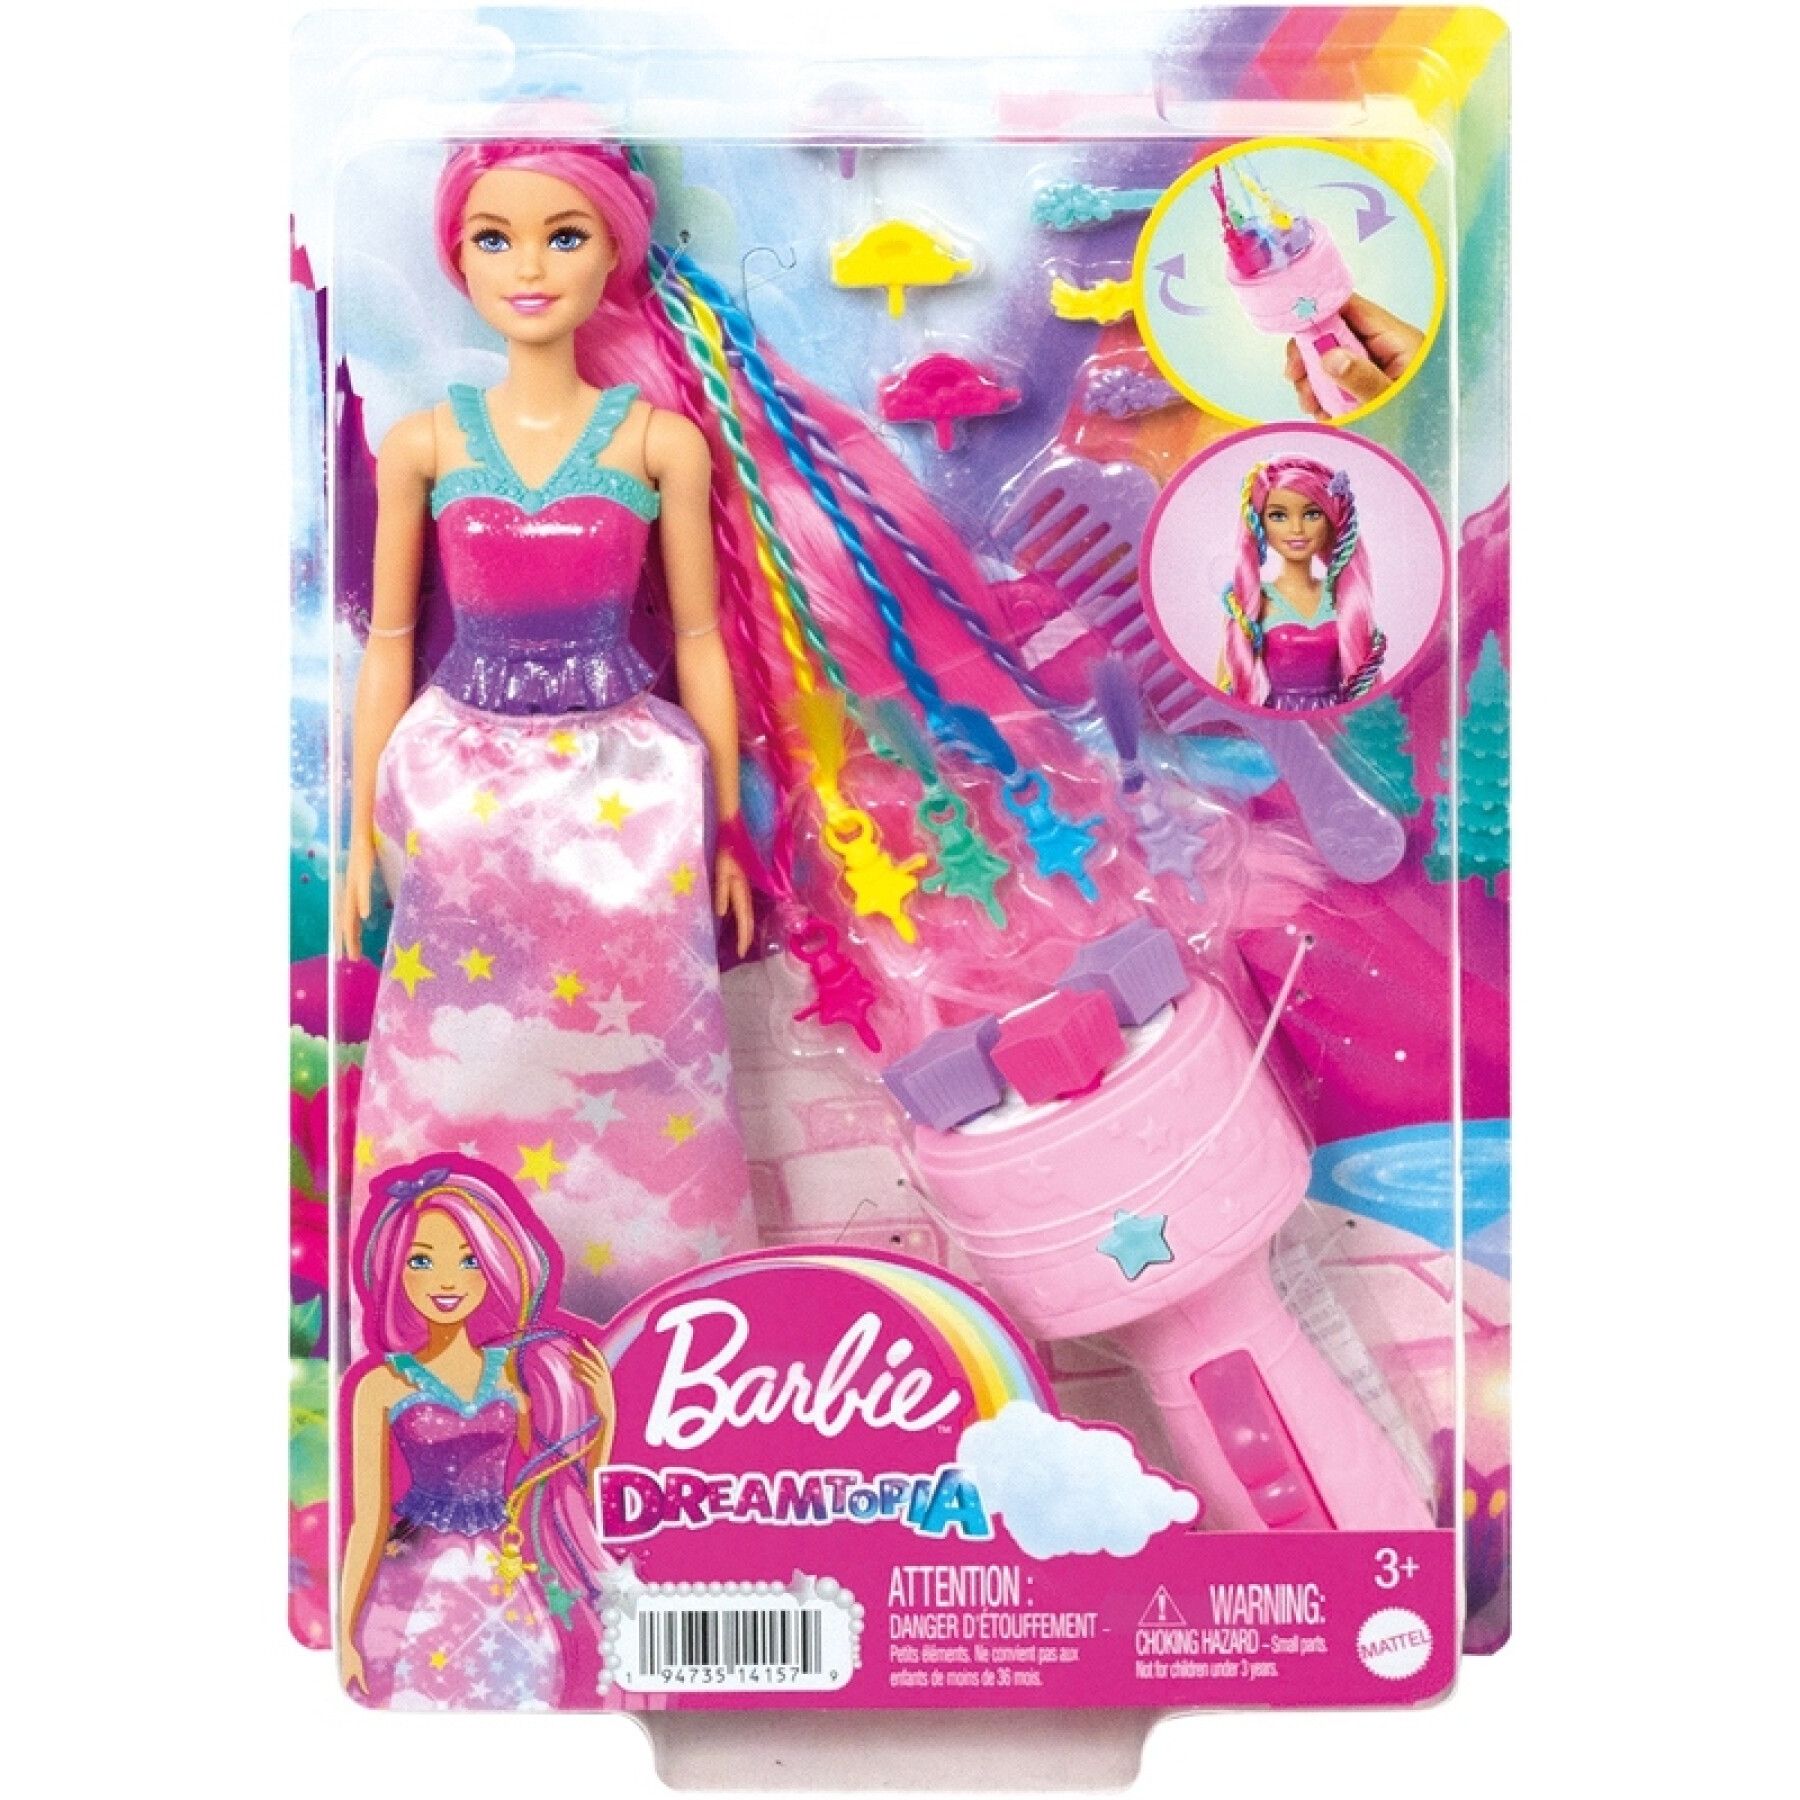 Barbiepop met magische vlechten Mattel France